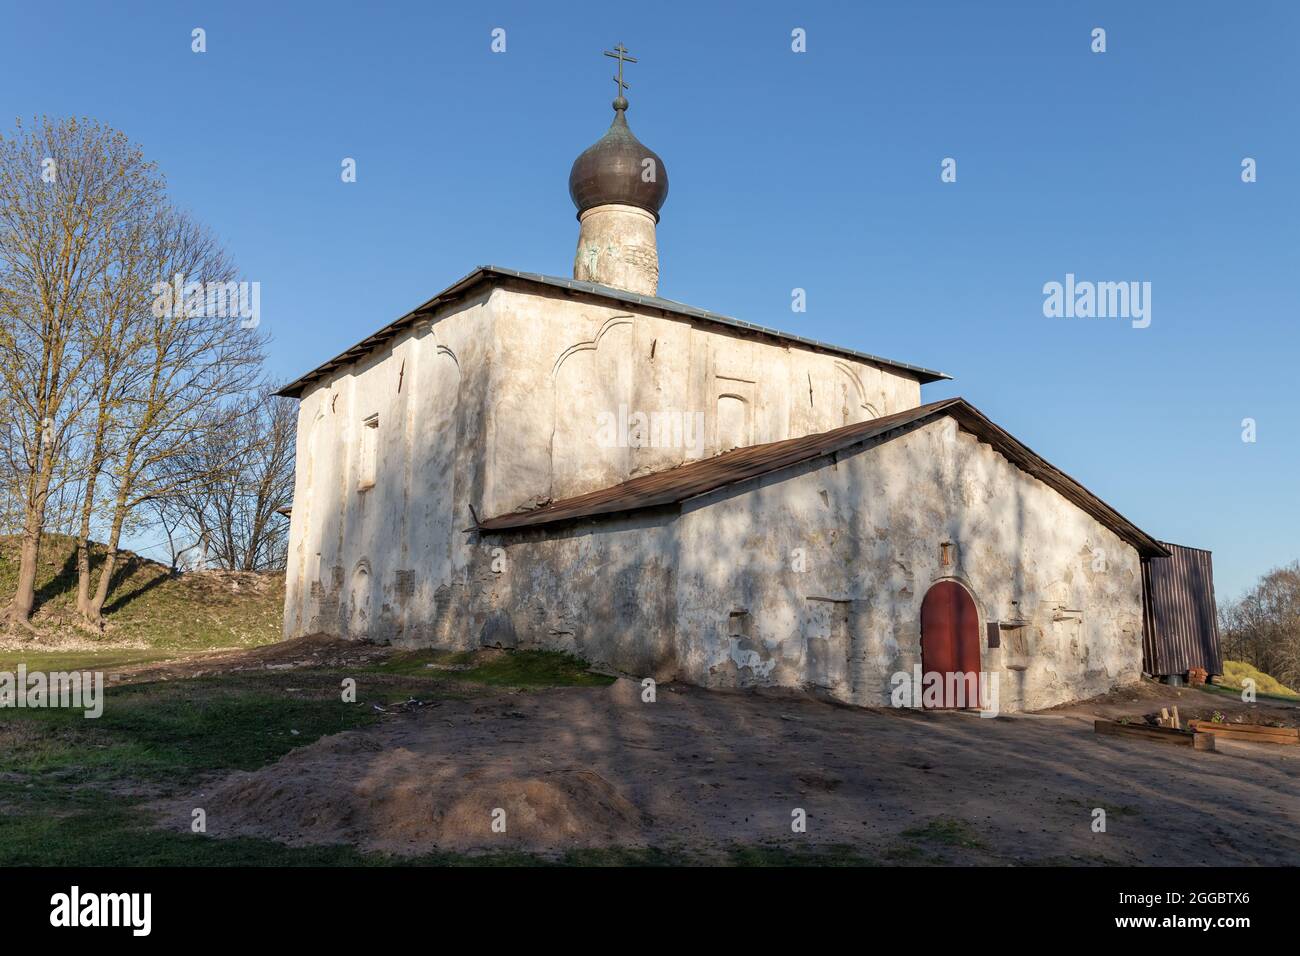 Chiesa di Kozma e Damian da Gremyachaya montagna. Antica chiesa ortodossa russa all'esterno in una giornata di primavera. Pskov, Federazione russa Foto Stock